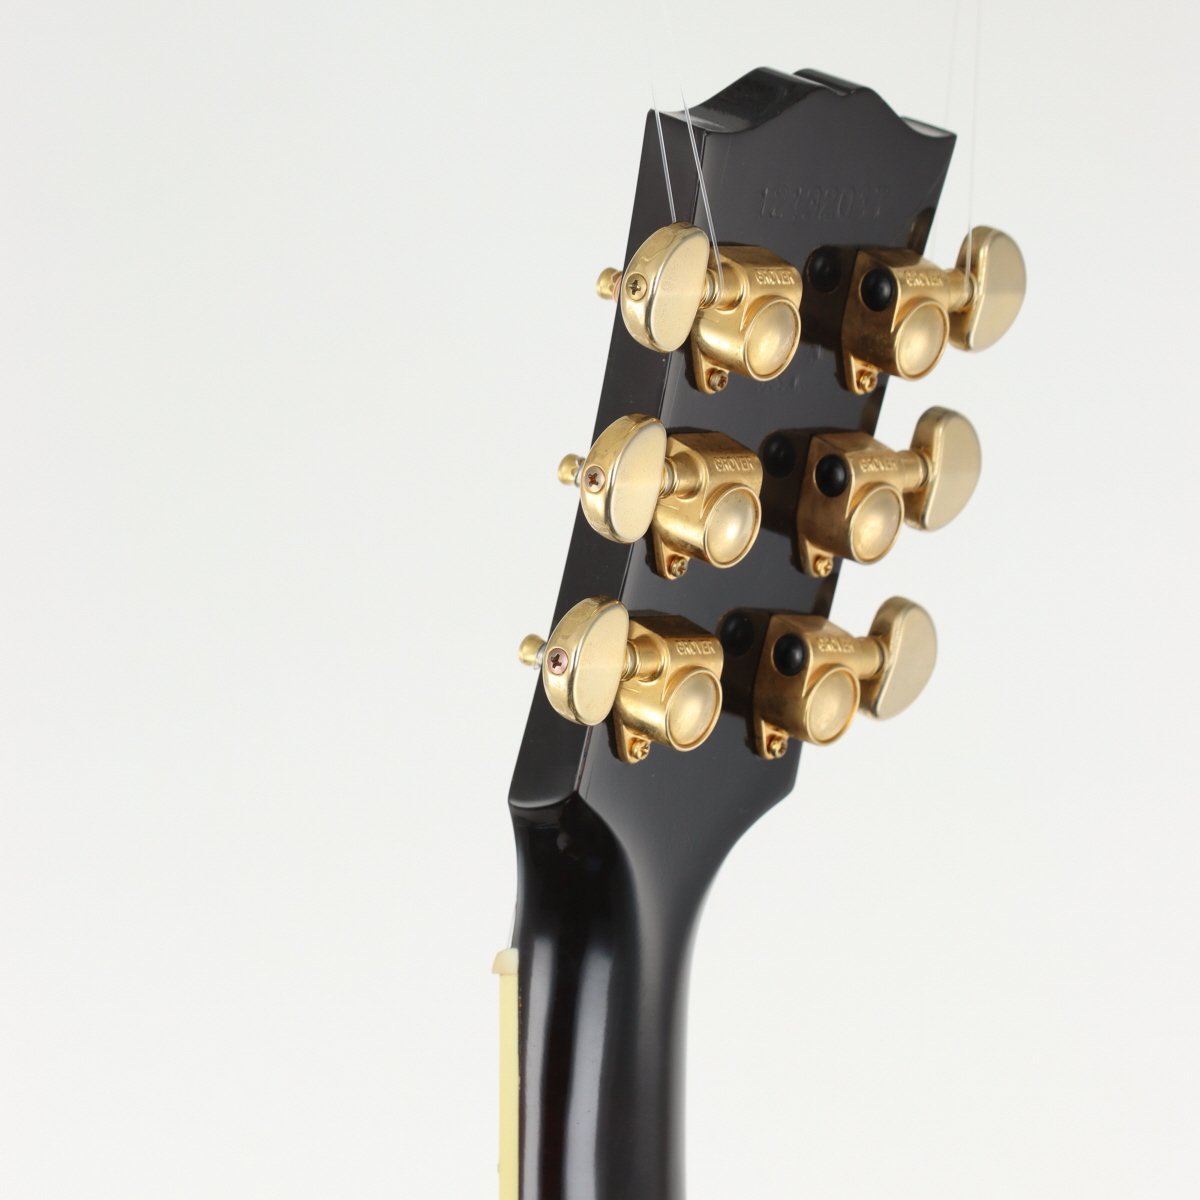 [SN 12132017] USED Gibson / J-45 Custom Rosewood VintageSunburst [11]